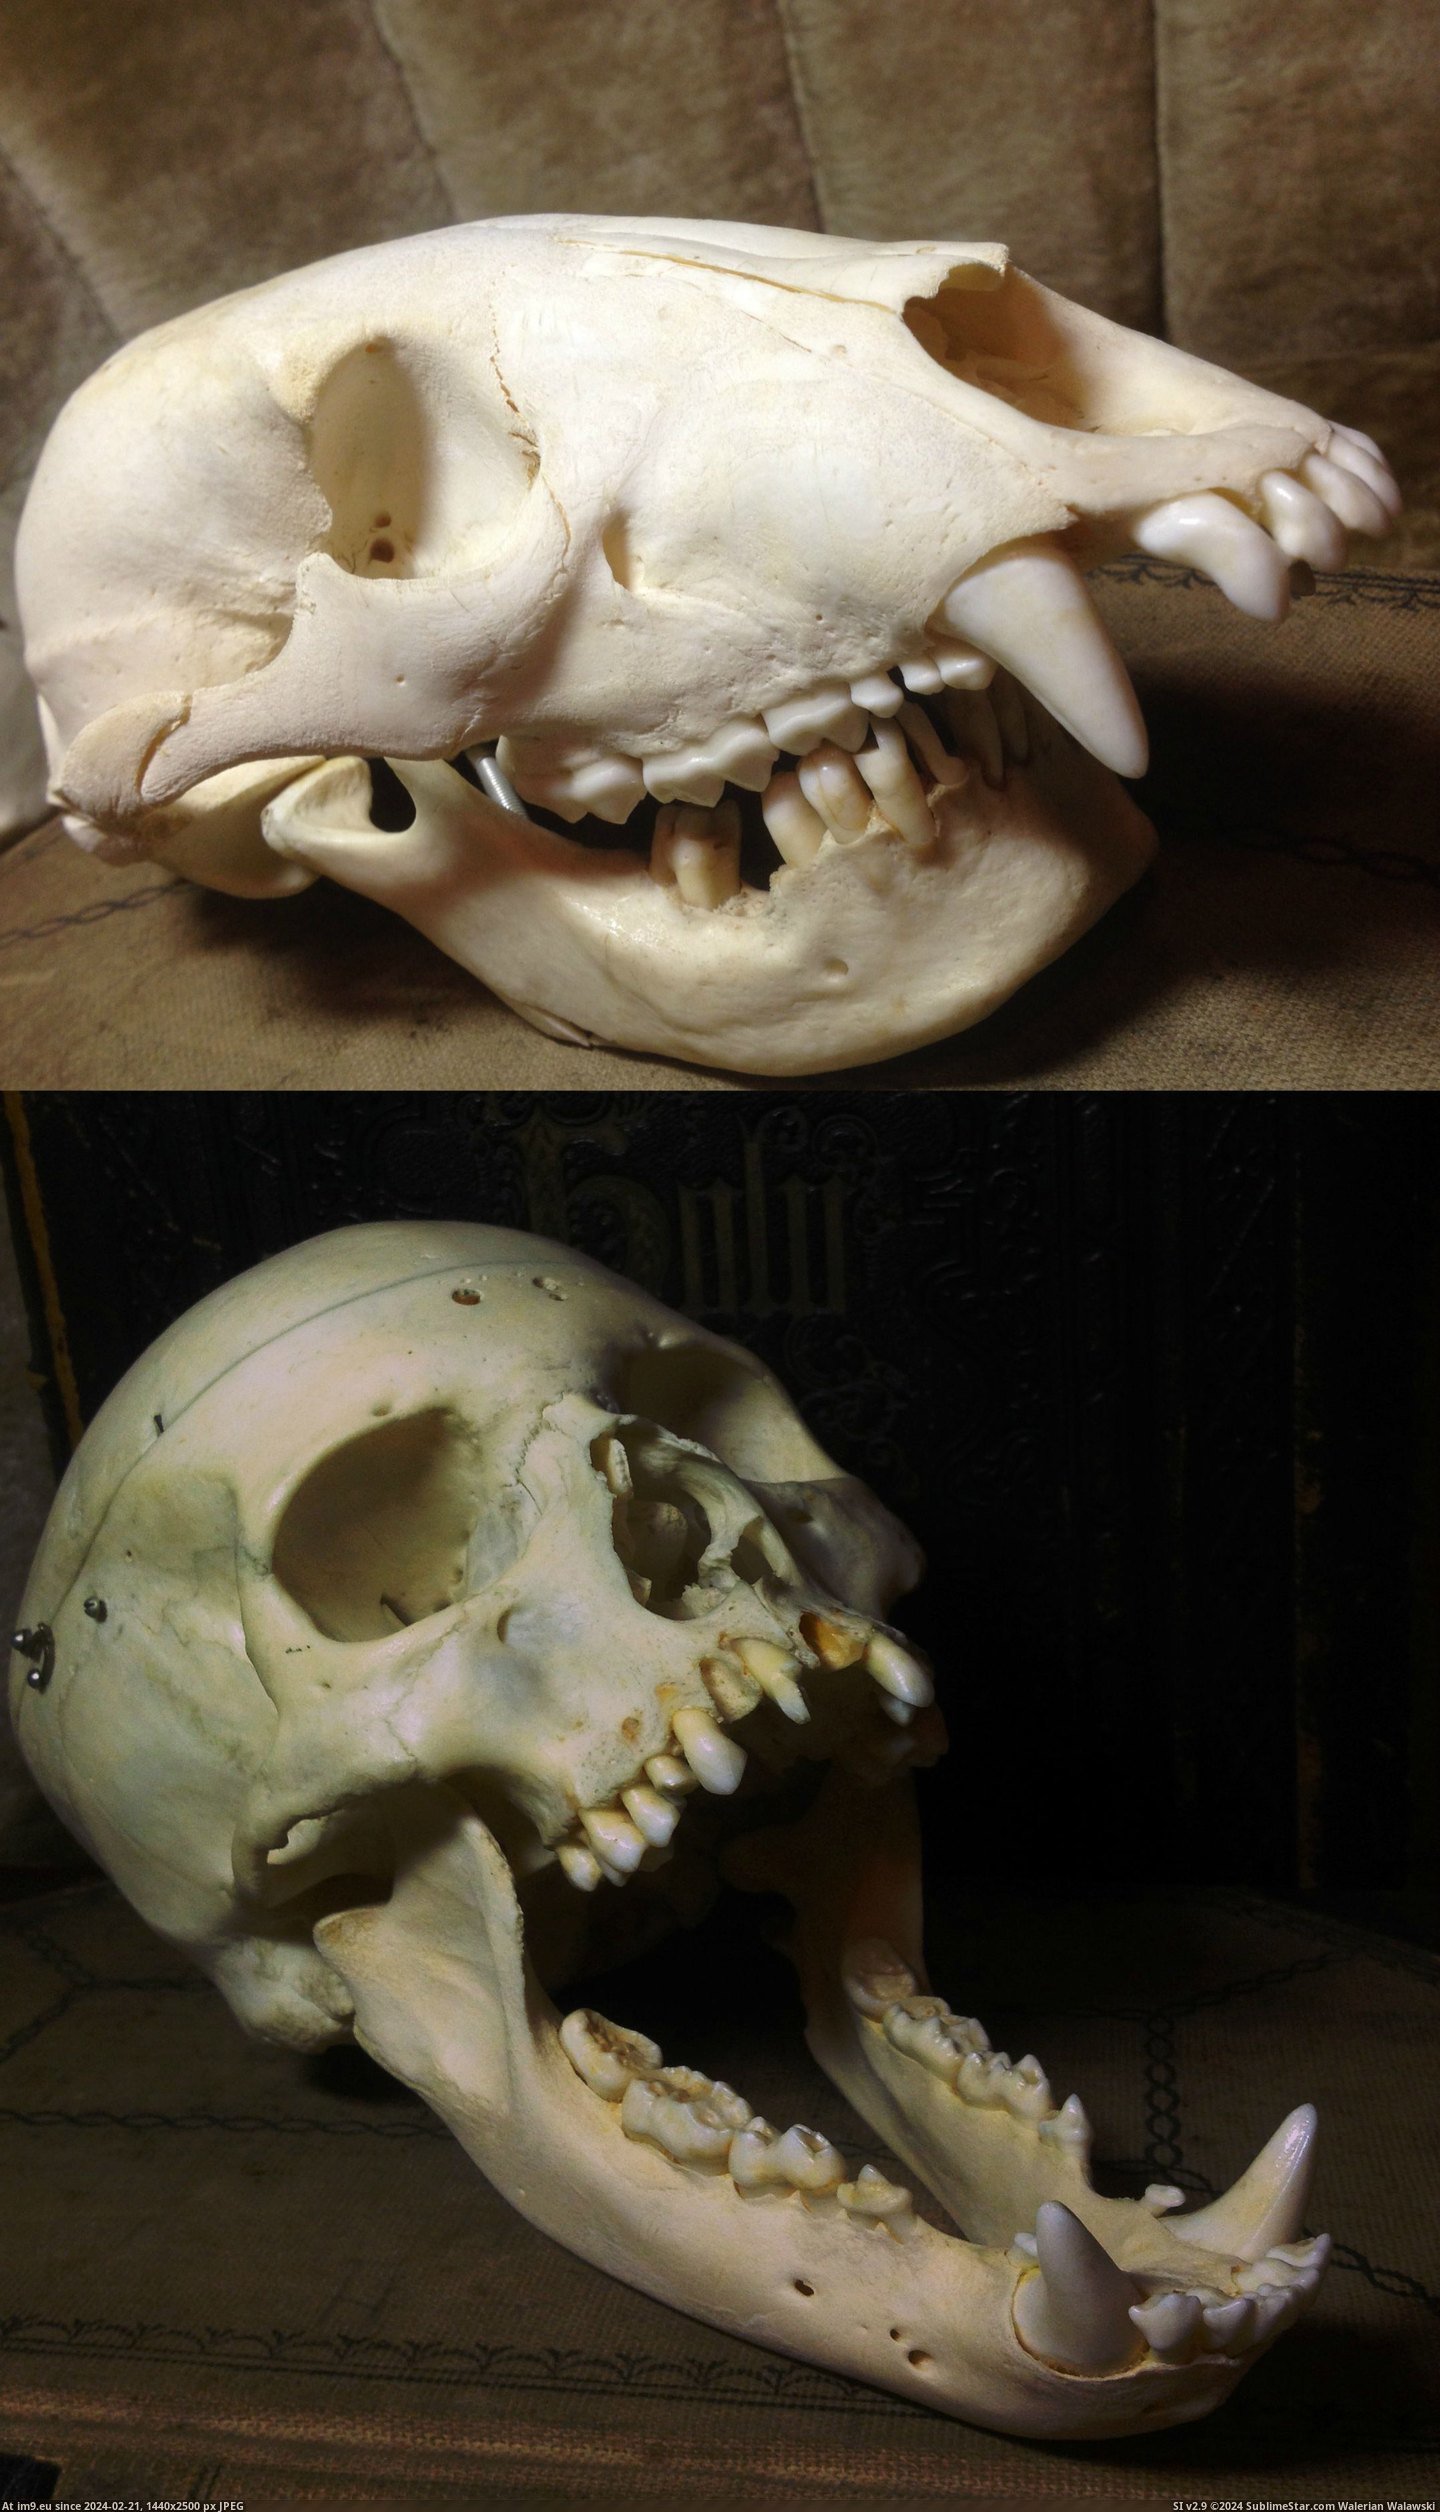 #Wtf #Human #Swap #Bear #Skull [Wtf] Human & Bear Skull Swap Pic. (Bild von album My r/WTF favs))